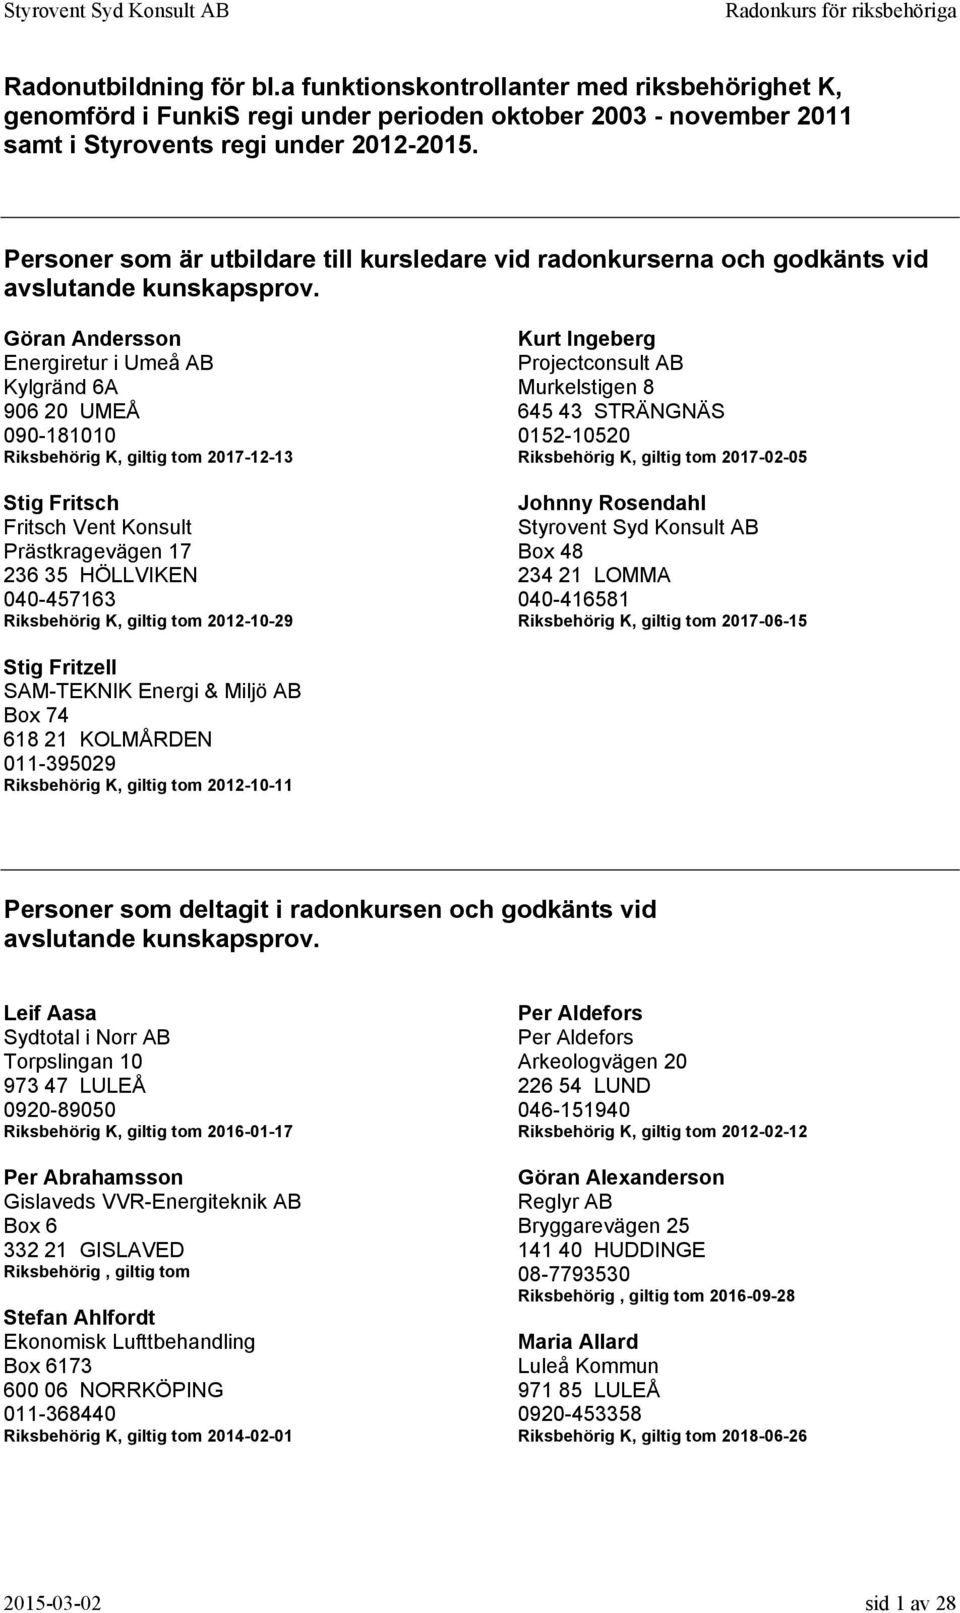 Göran Andersson Energiretur i Umeå AB Kylgränd 6A 906 20 UMEÅ 090-181010 2017-12-13 Stig Fritsch Fritsch Vent Konsult Prästkragevägen 17 236 35 HÖLLVIKEN 040-457163 2012-10-29 Kurt Ingeberg